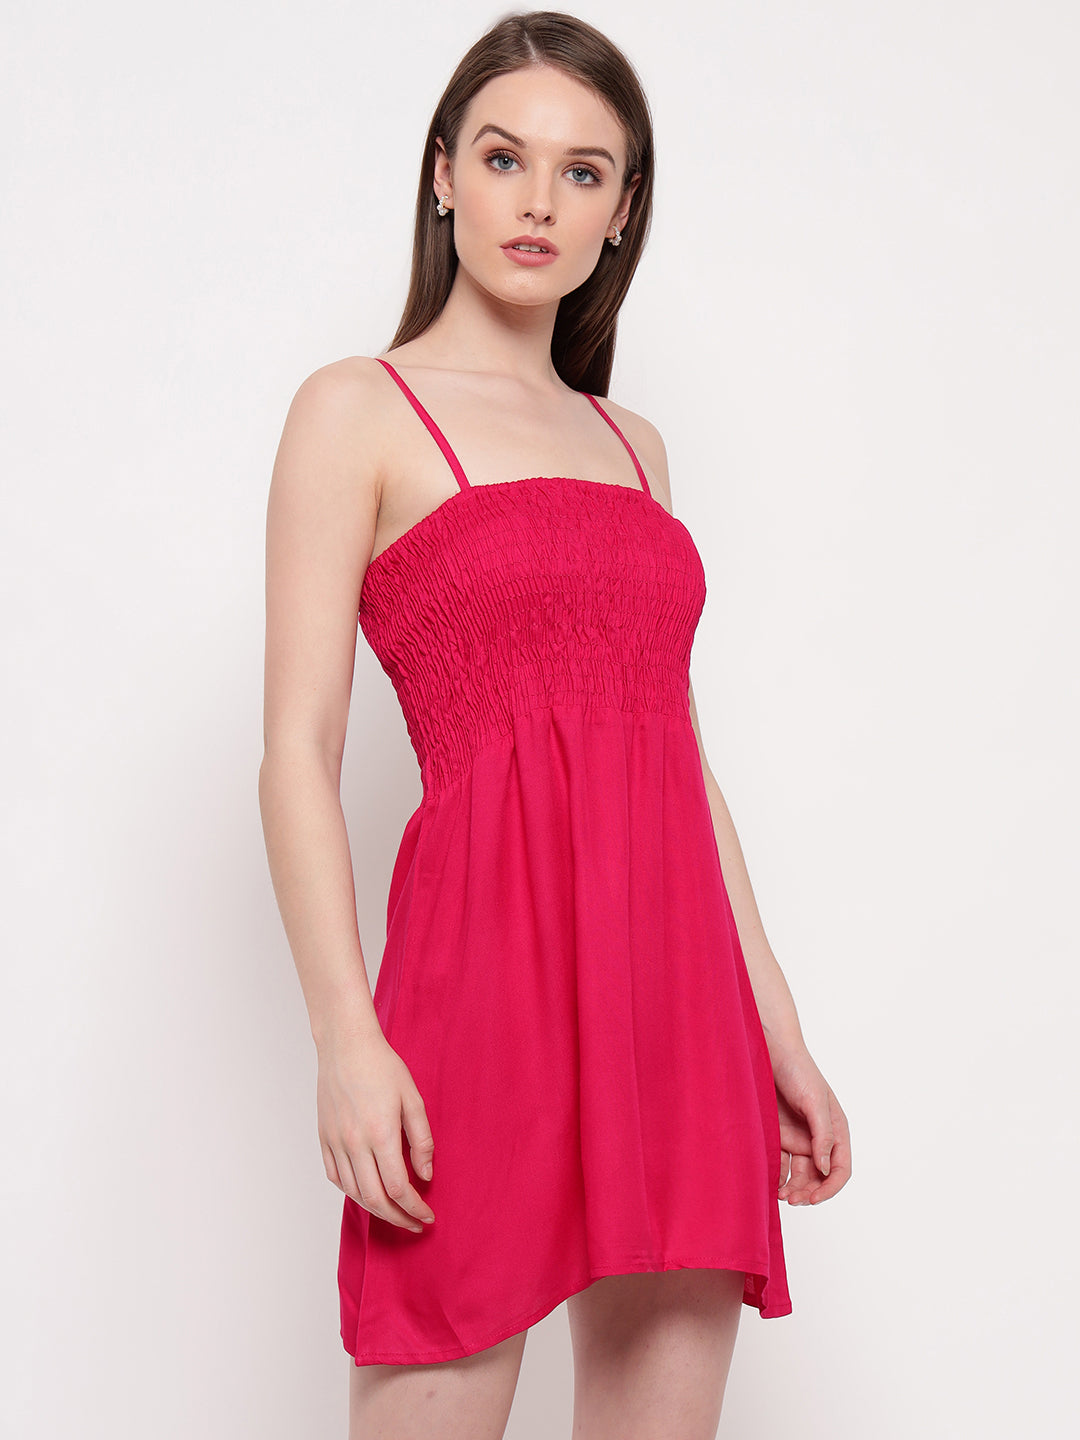 Aawari Short Pink Dress